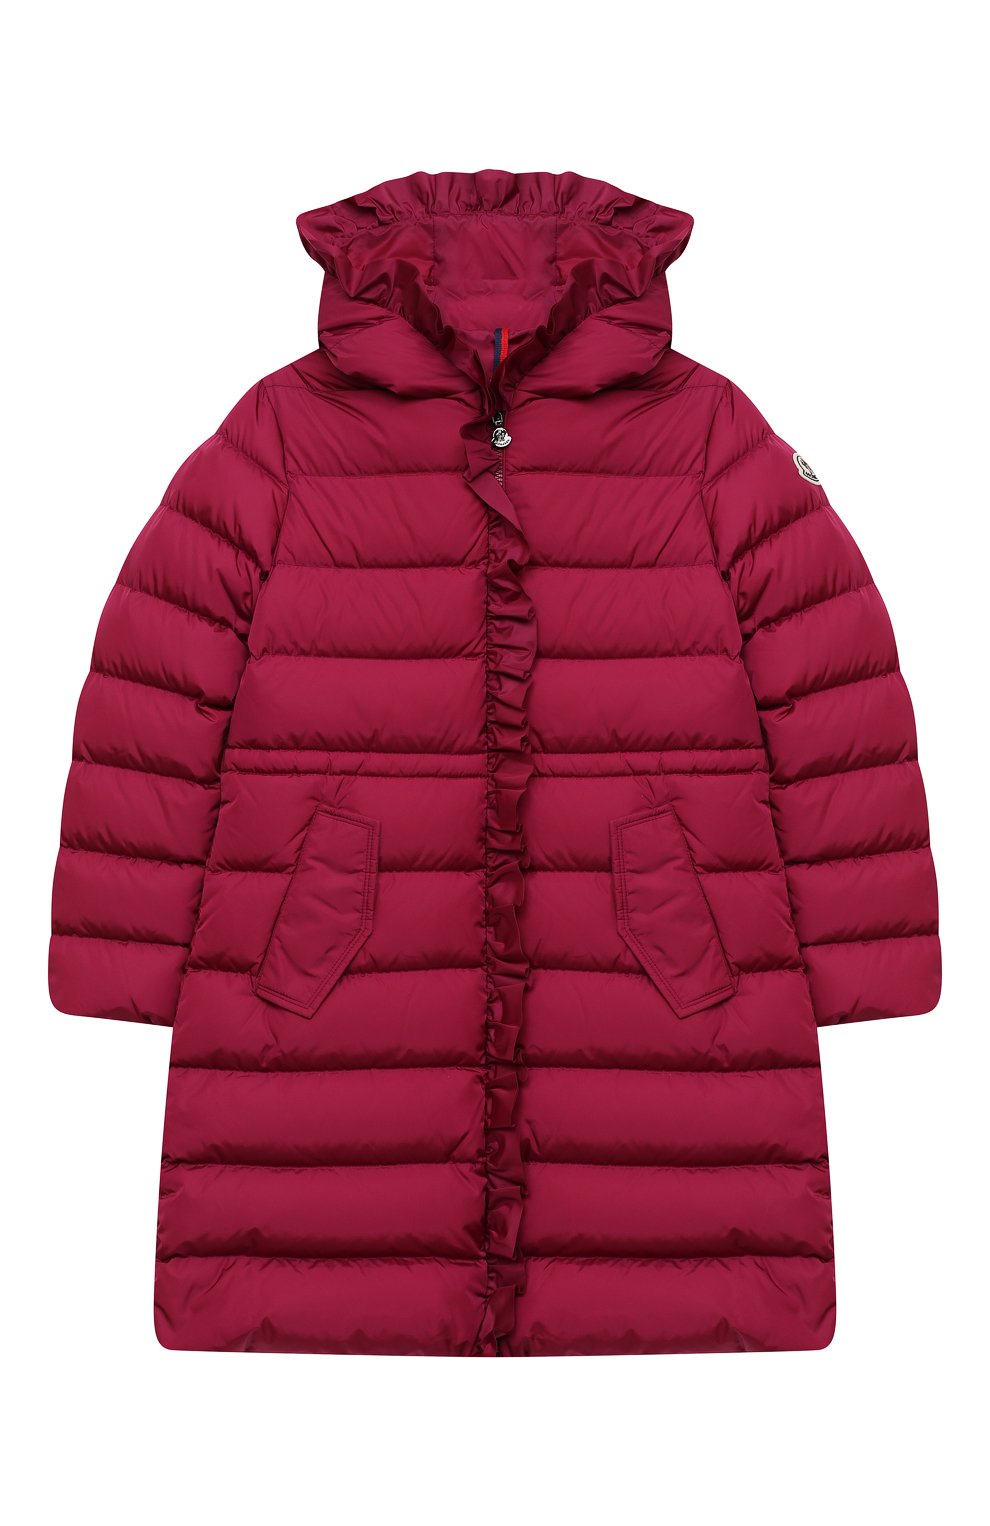 Пуховое пальто MONCLER детская бордового цвета — купить в интернет-магазине  ЦУМ, арт. F2-954-1C508-10-54155/12-14A